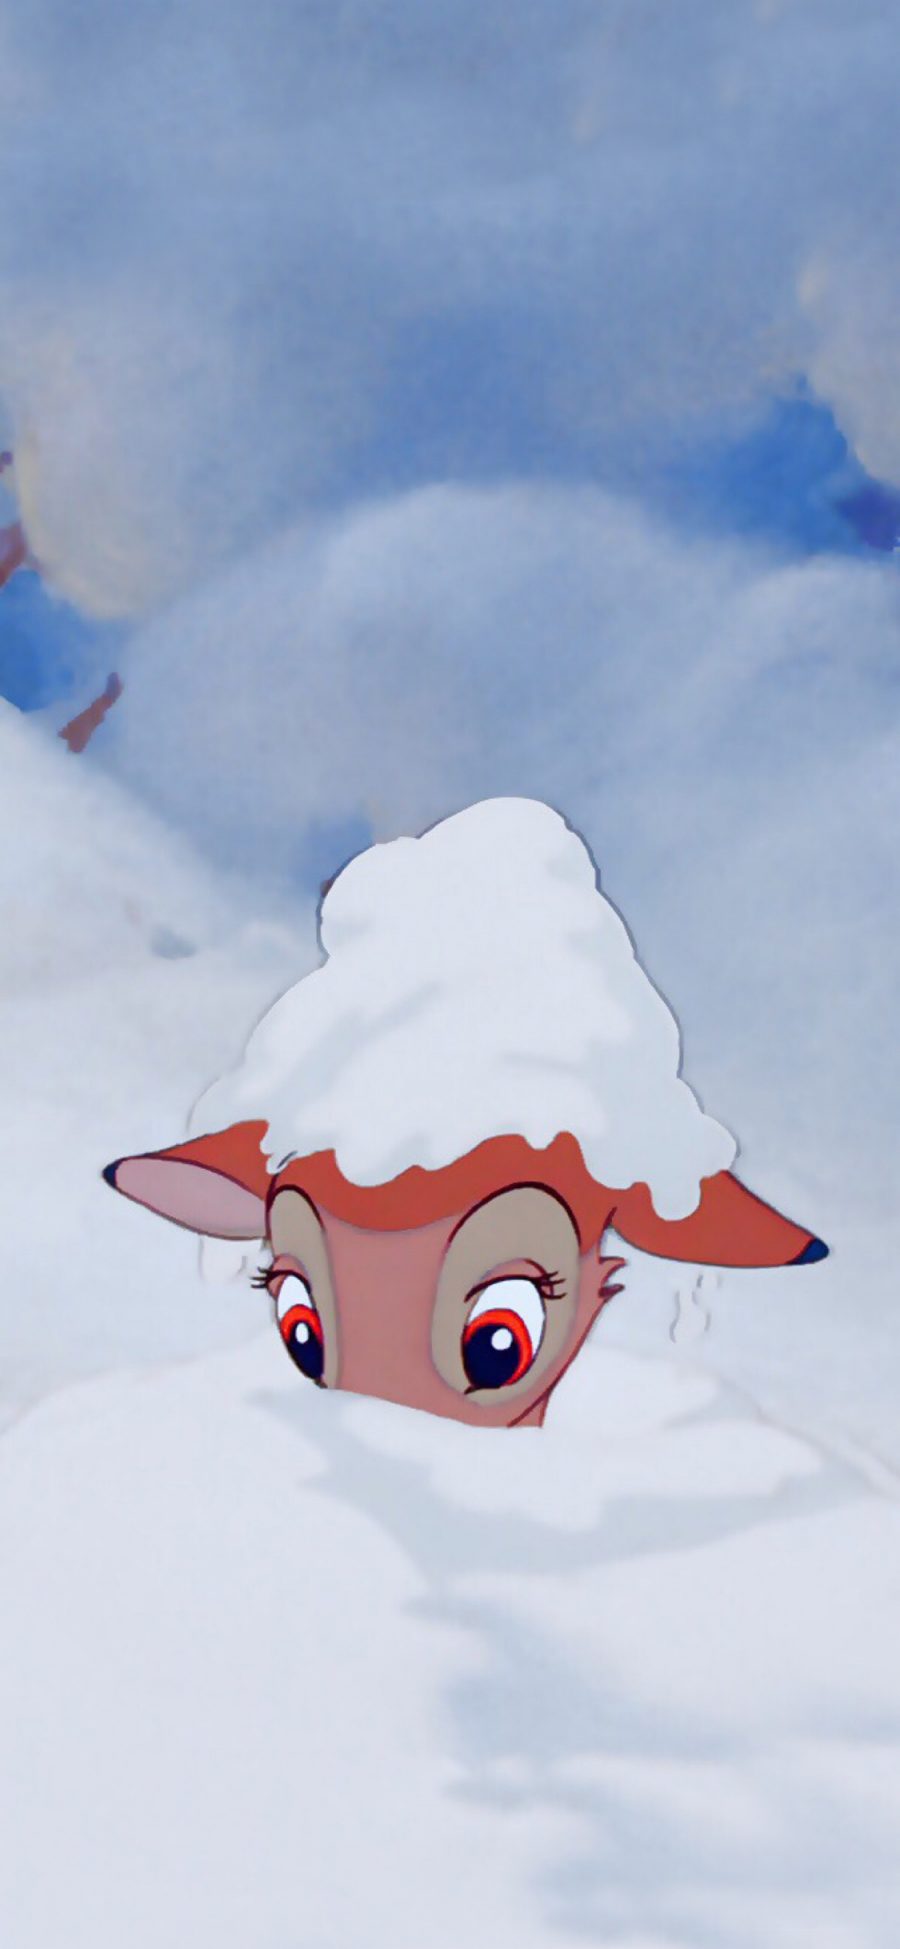 [2436×1125]迪士尼 动画 小鹿斑比 雪地 苹果手机动漫壁纸图片